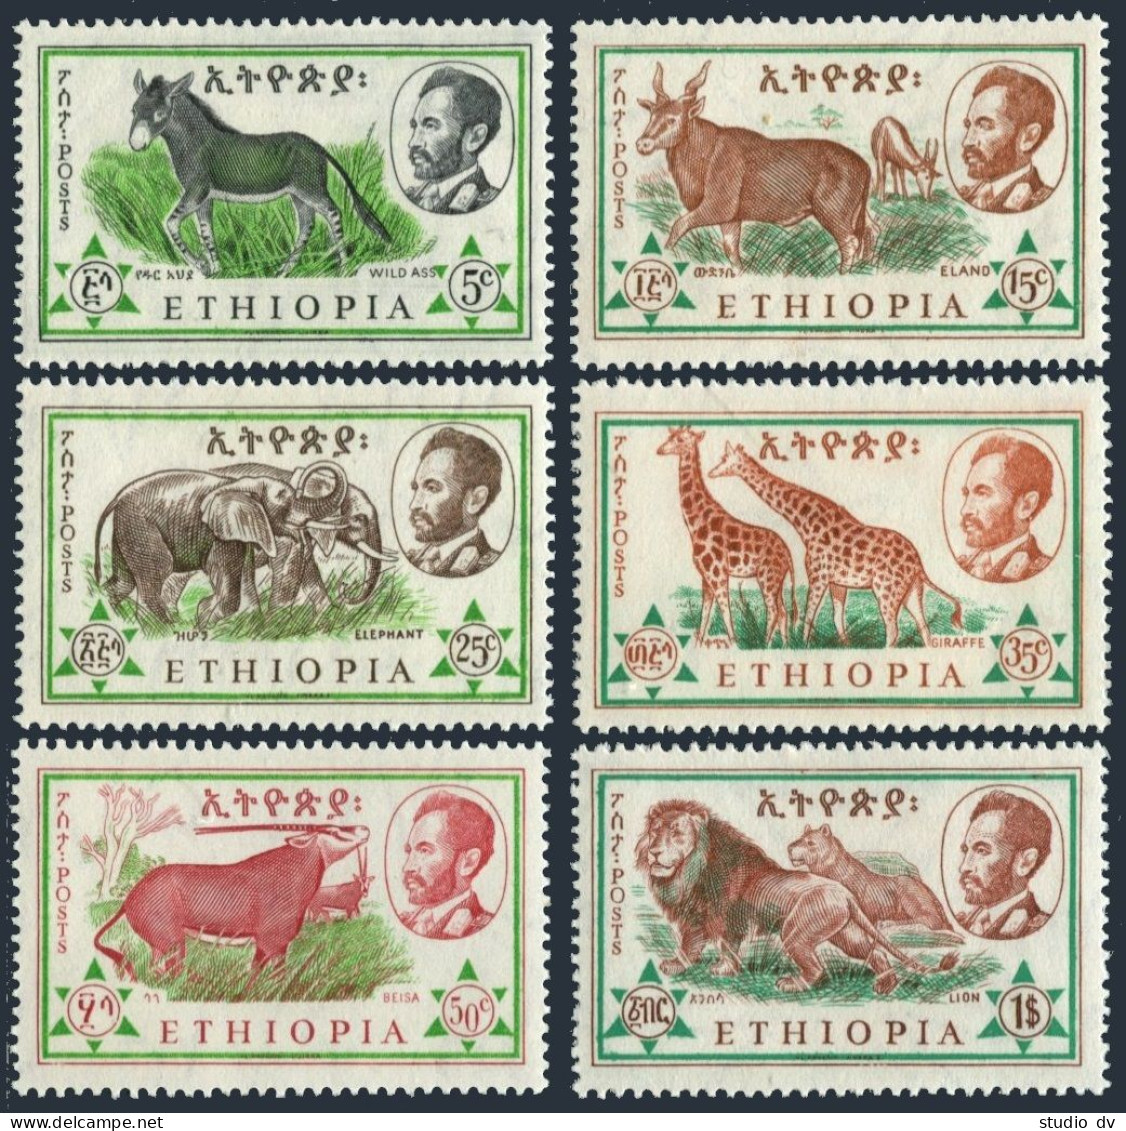 Ethiopia 369-374, MNH. Mi 408-413. 1961. Ass,Eland, Elephant,Giraffe,Beisa,Lion. - Ethiopia